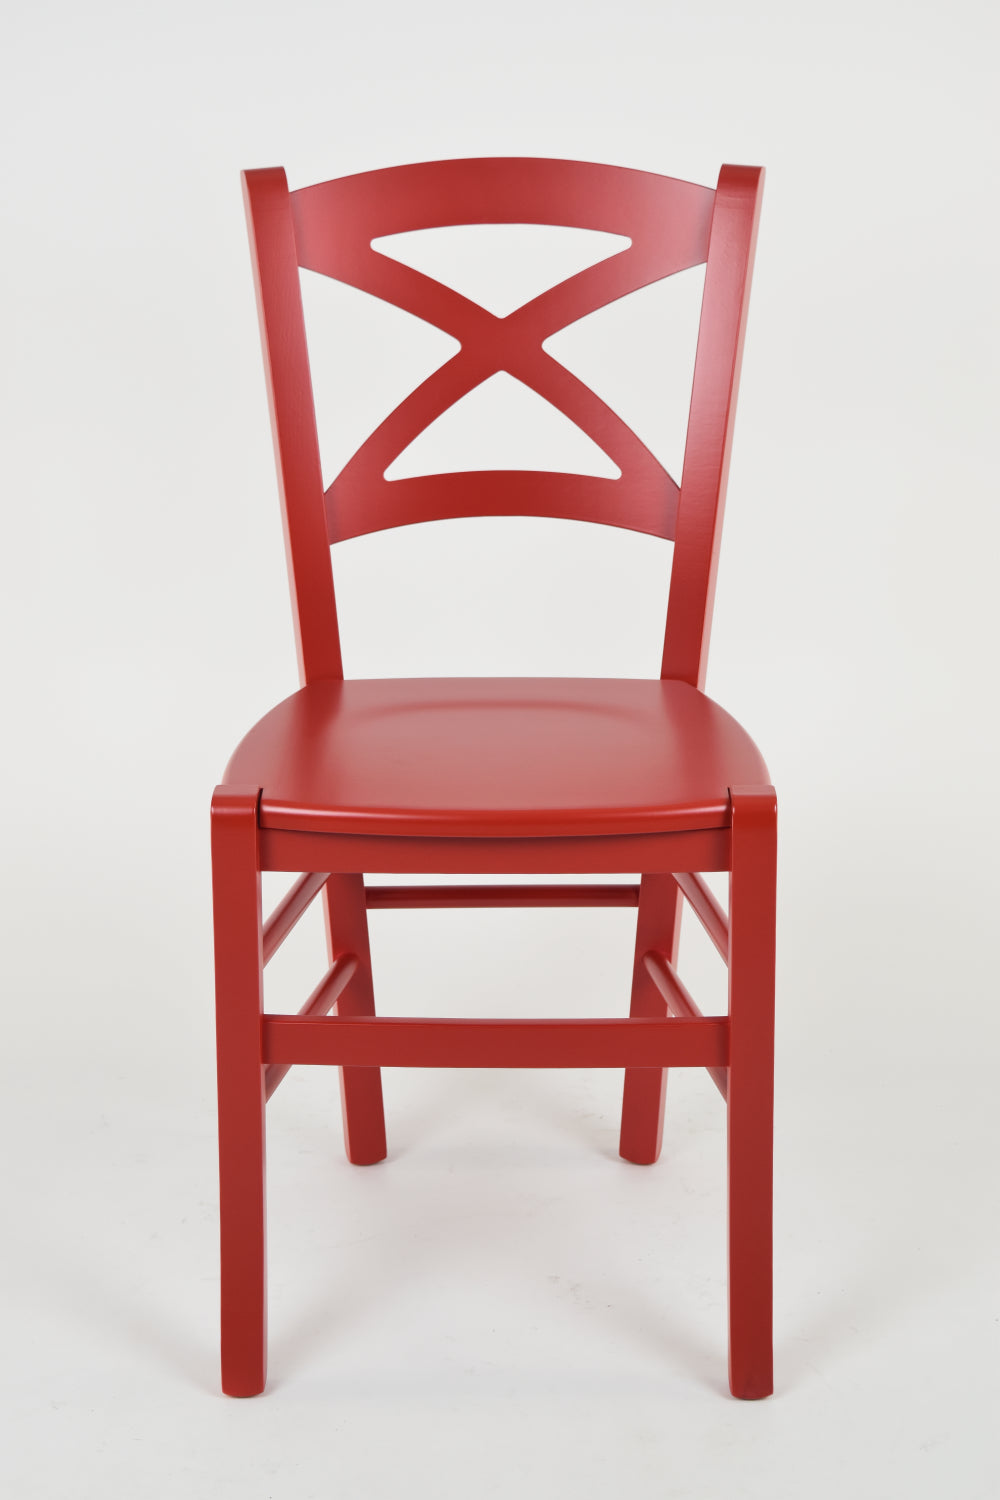 Tommychairs - Set 4 sillas de Cocina y Comedor Cross, Estructura en Madera de Haya lacada Color Rojo y Asiento en Madera